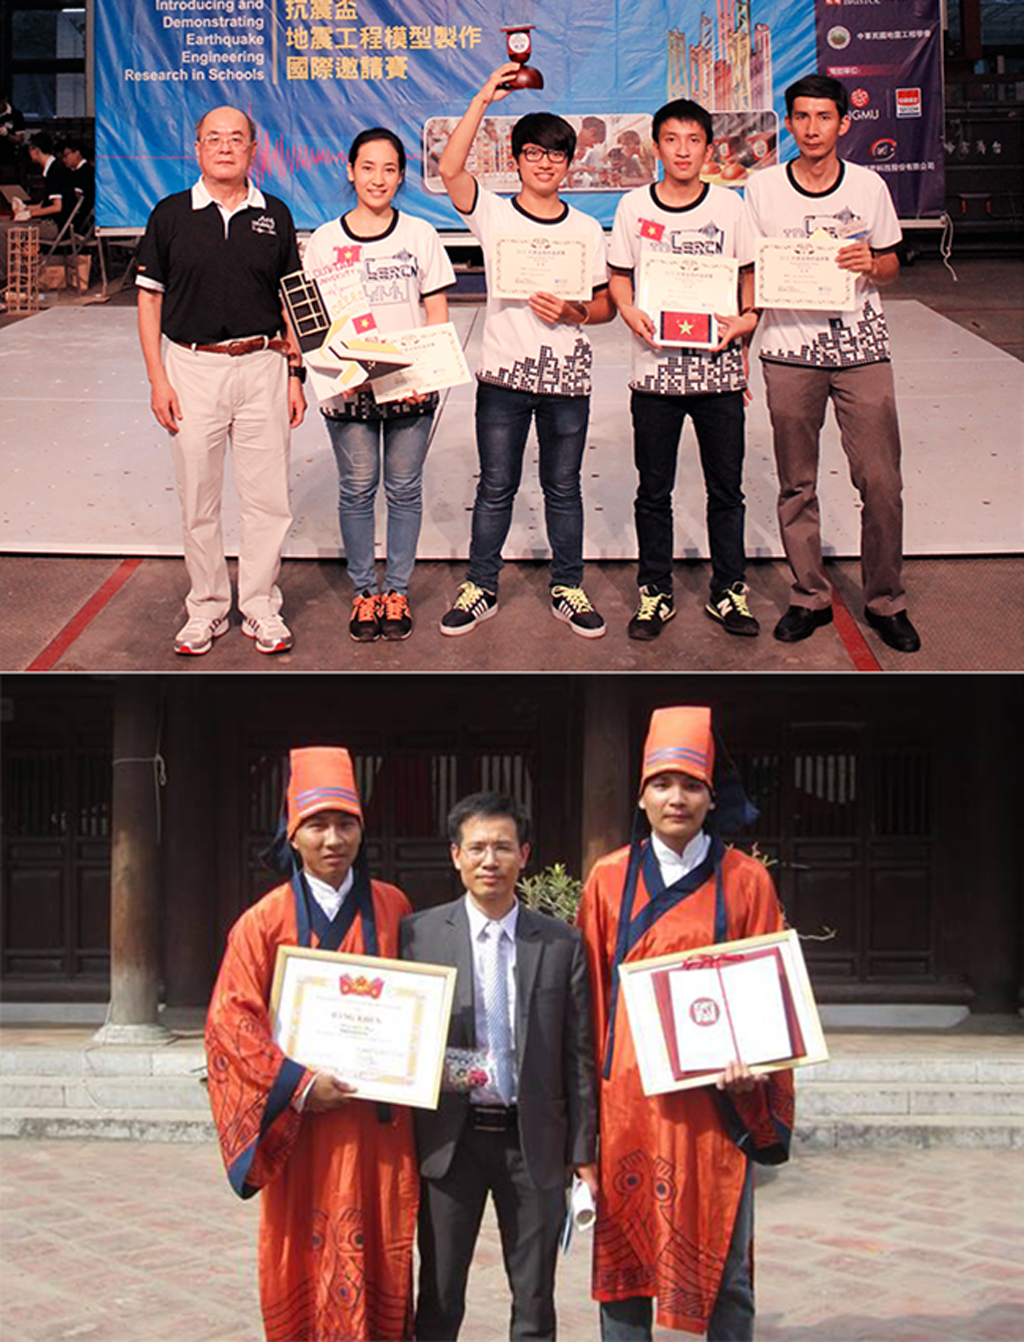 Sinh viên Duy Tân với Cup Vô địch IDEERS châu Á - Thái Bình Dương (ảnh trên) và nhận Giải thưởng Loa thành (ảnh dưới)